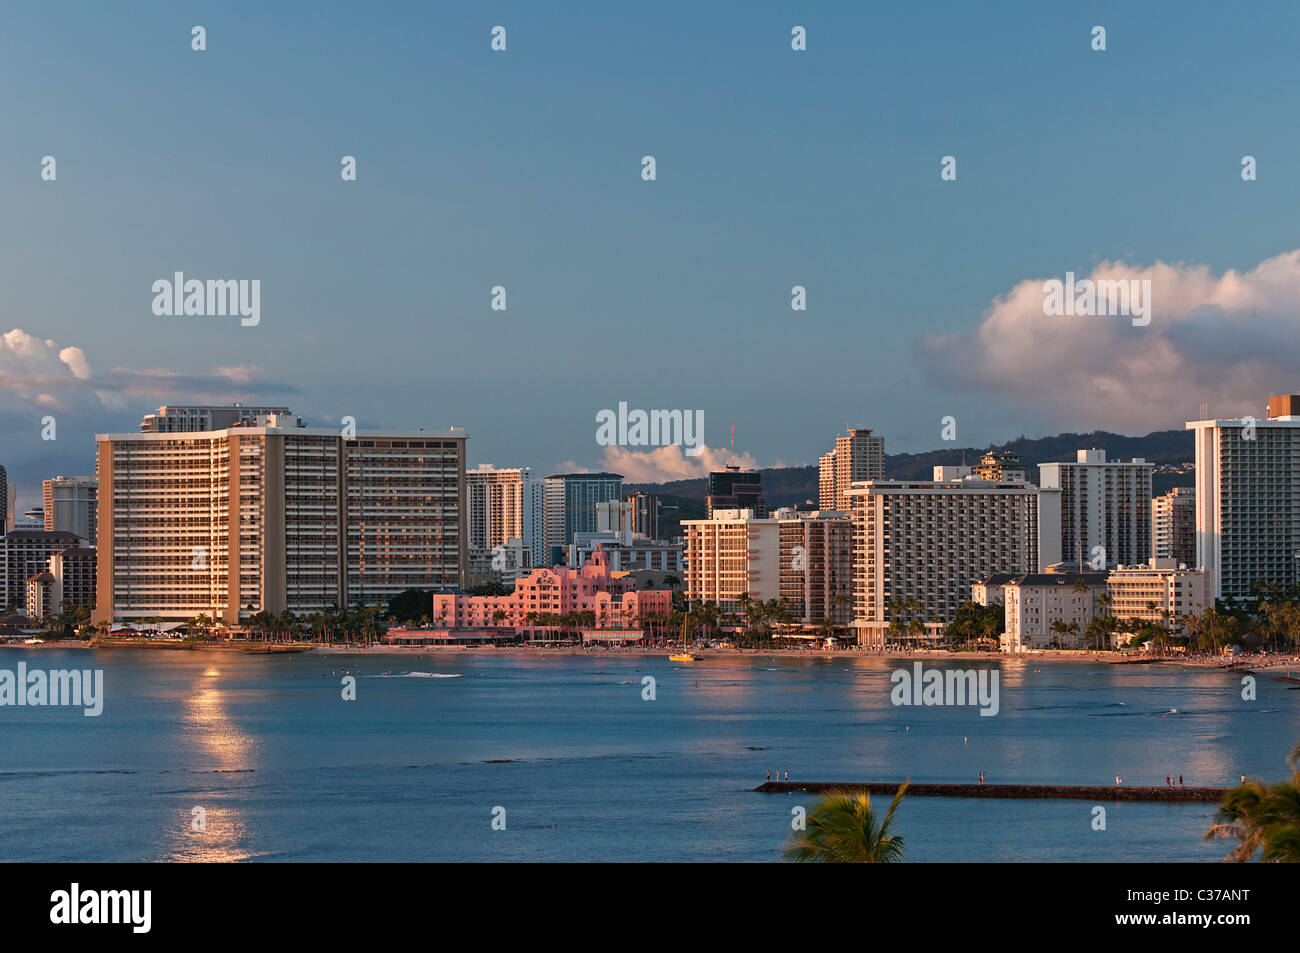 Un elevato angolo di visione di vari alberghi affollano il litorale della spiaggia di Waikiki, Honolulu, Hawaii. Foto Stock